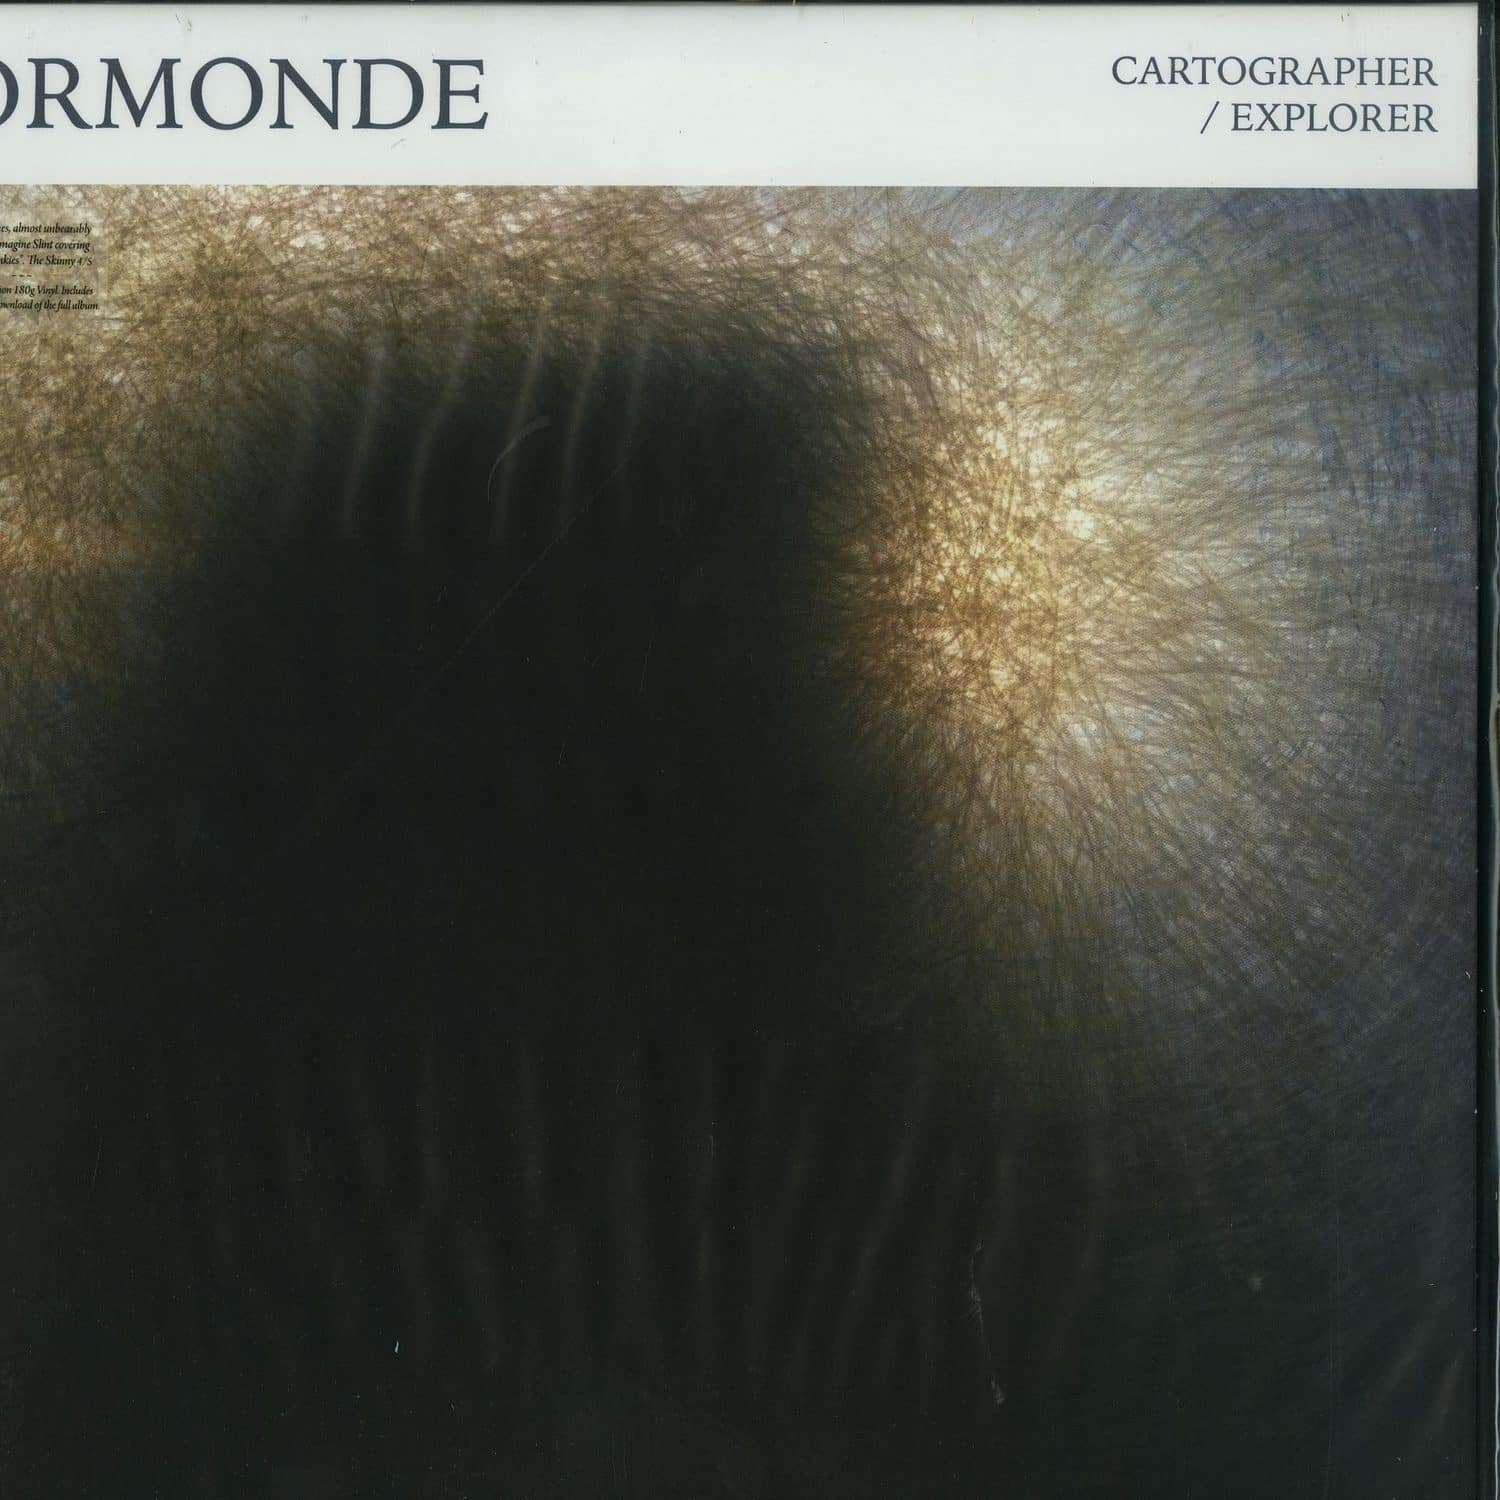 Ormonde - CARTOGRAPHER / EXPLORER 